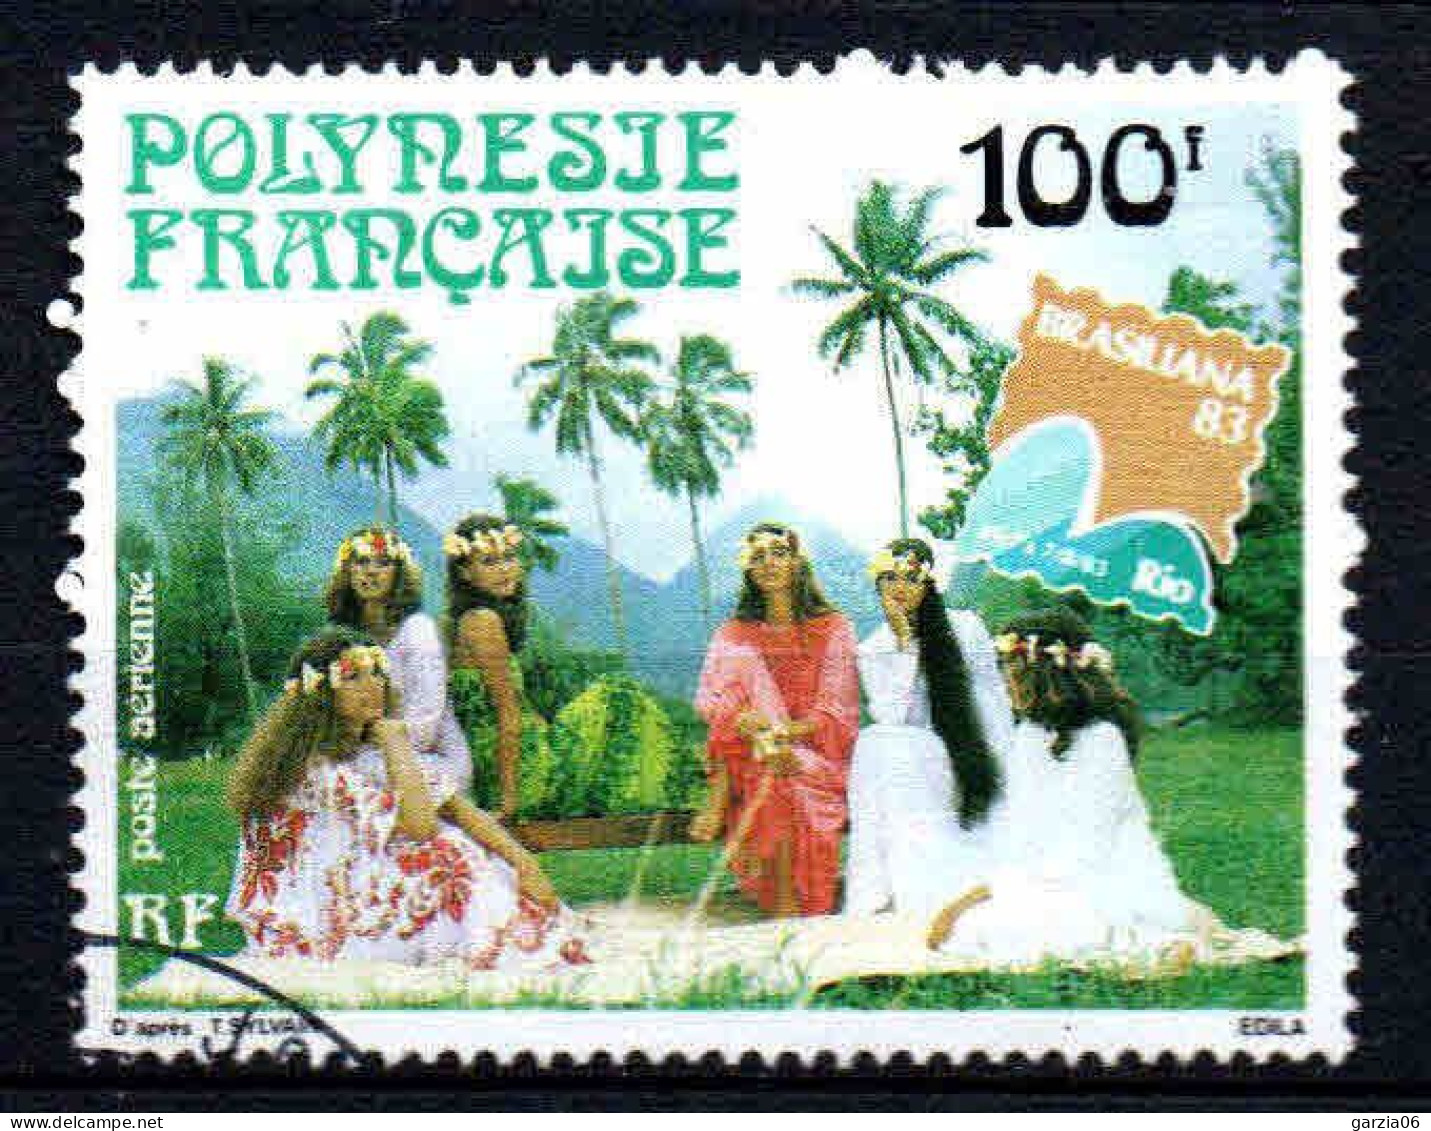 Polynésie - 1983  - Brasiliana  -  PA 176  - Oblit - Used - Oblitérés